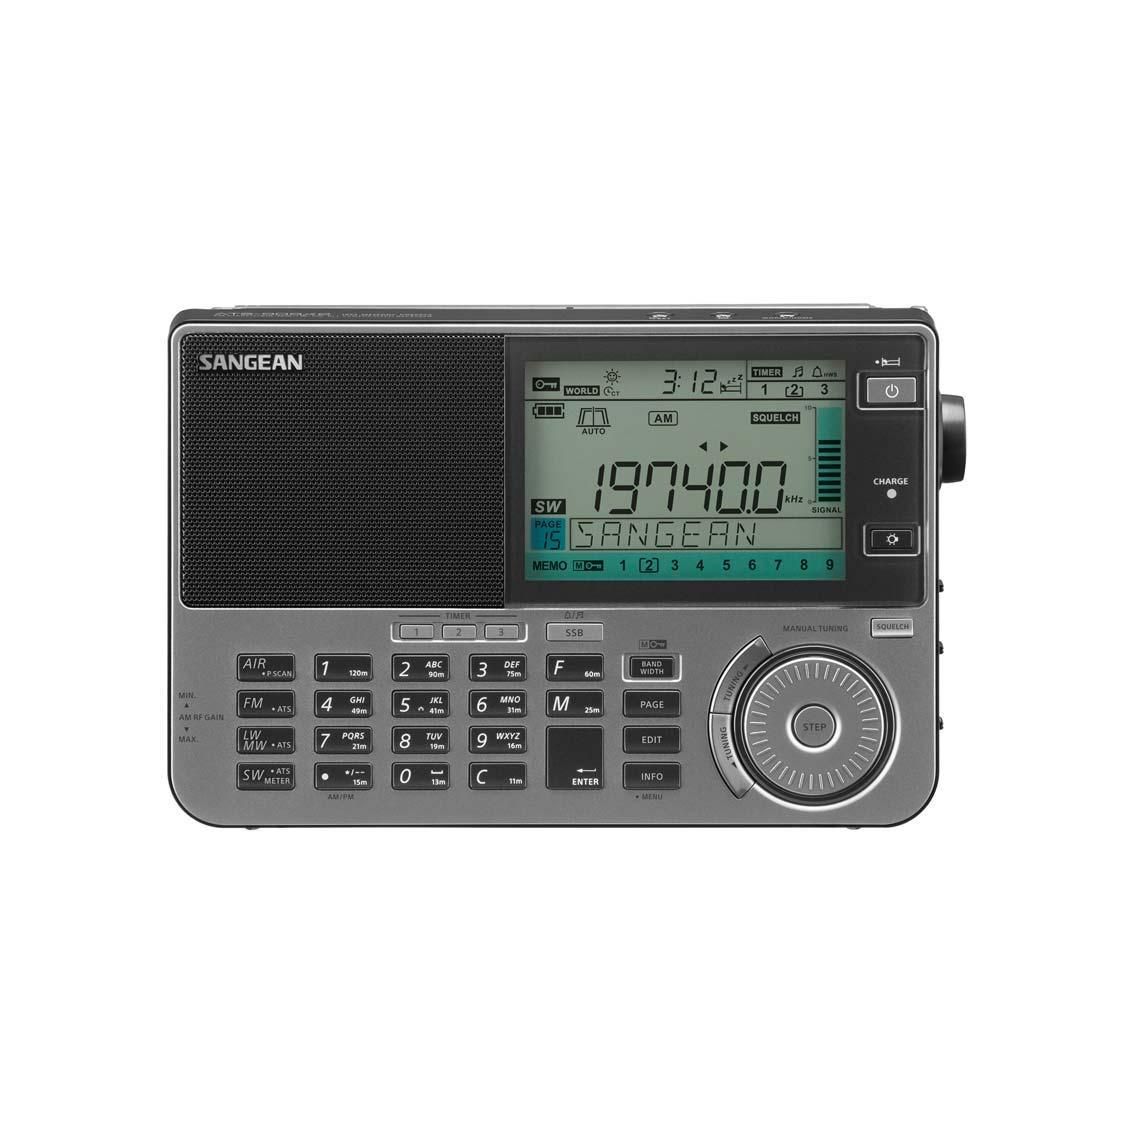 Sangean ATS-909X2 G FM / SW / MW/ LW/ Airband világvevő rádió (grafit)